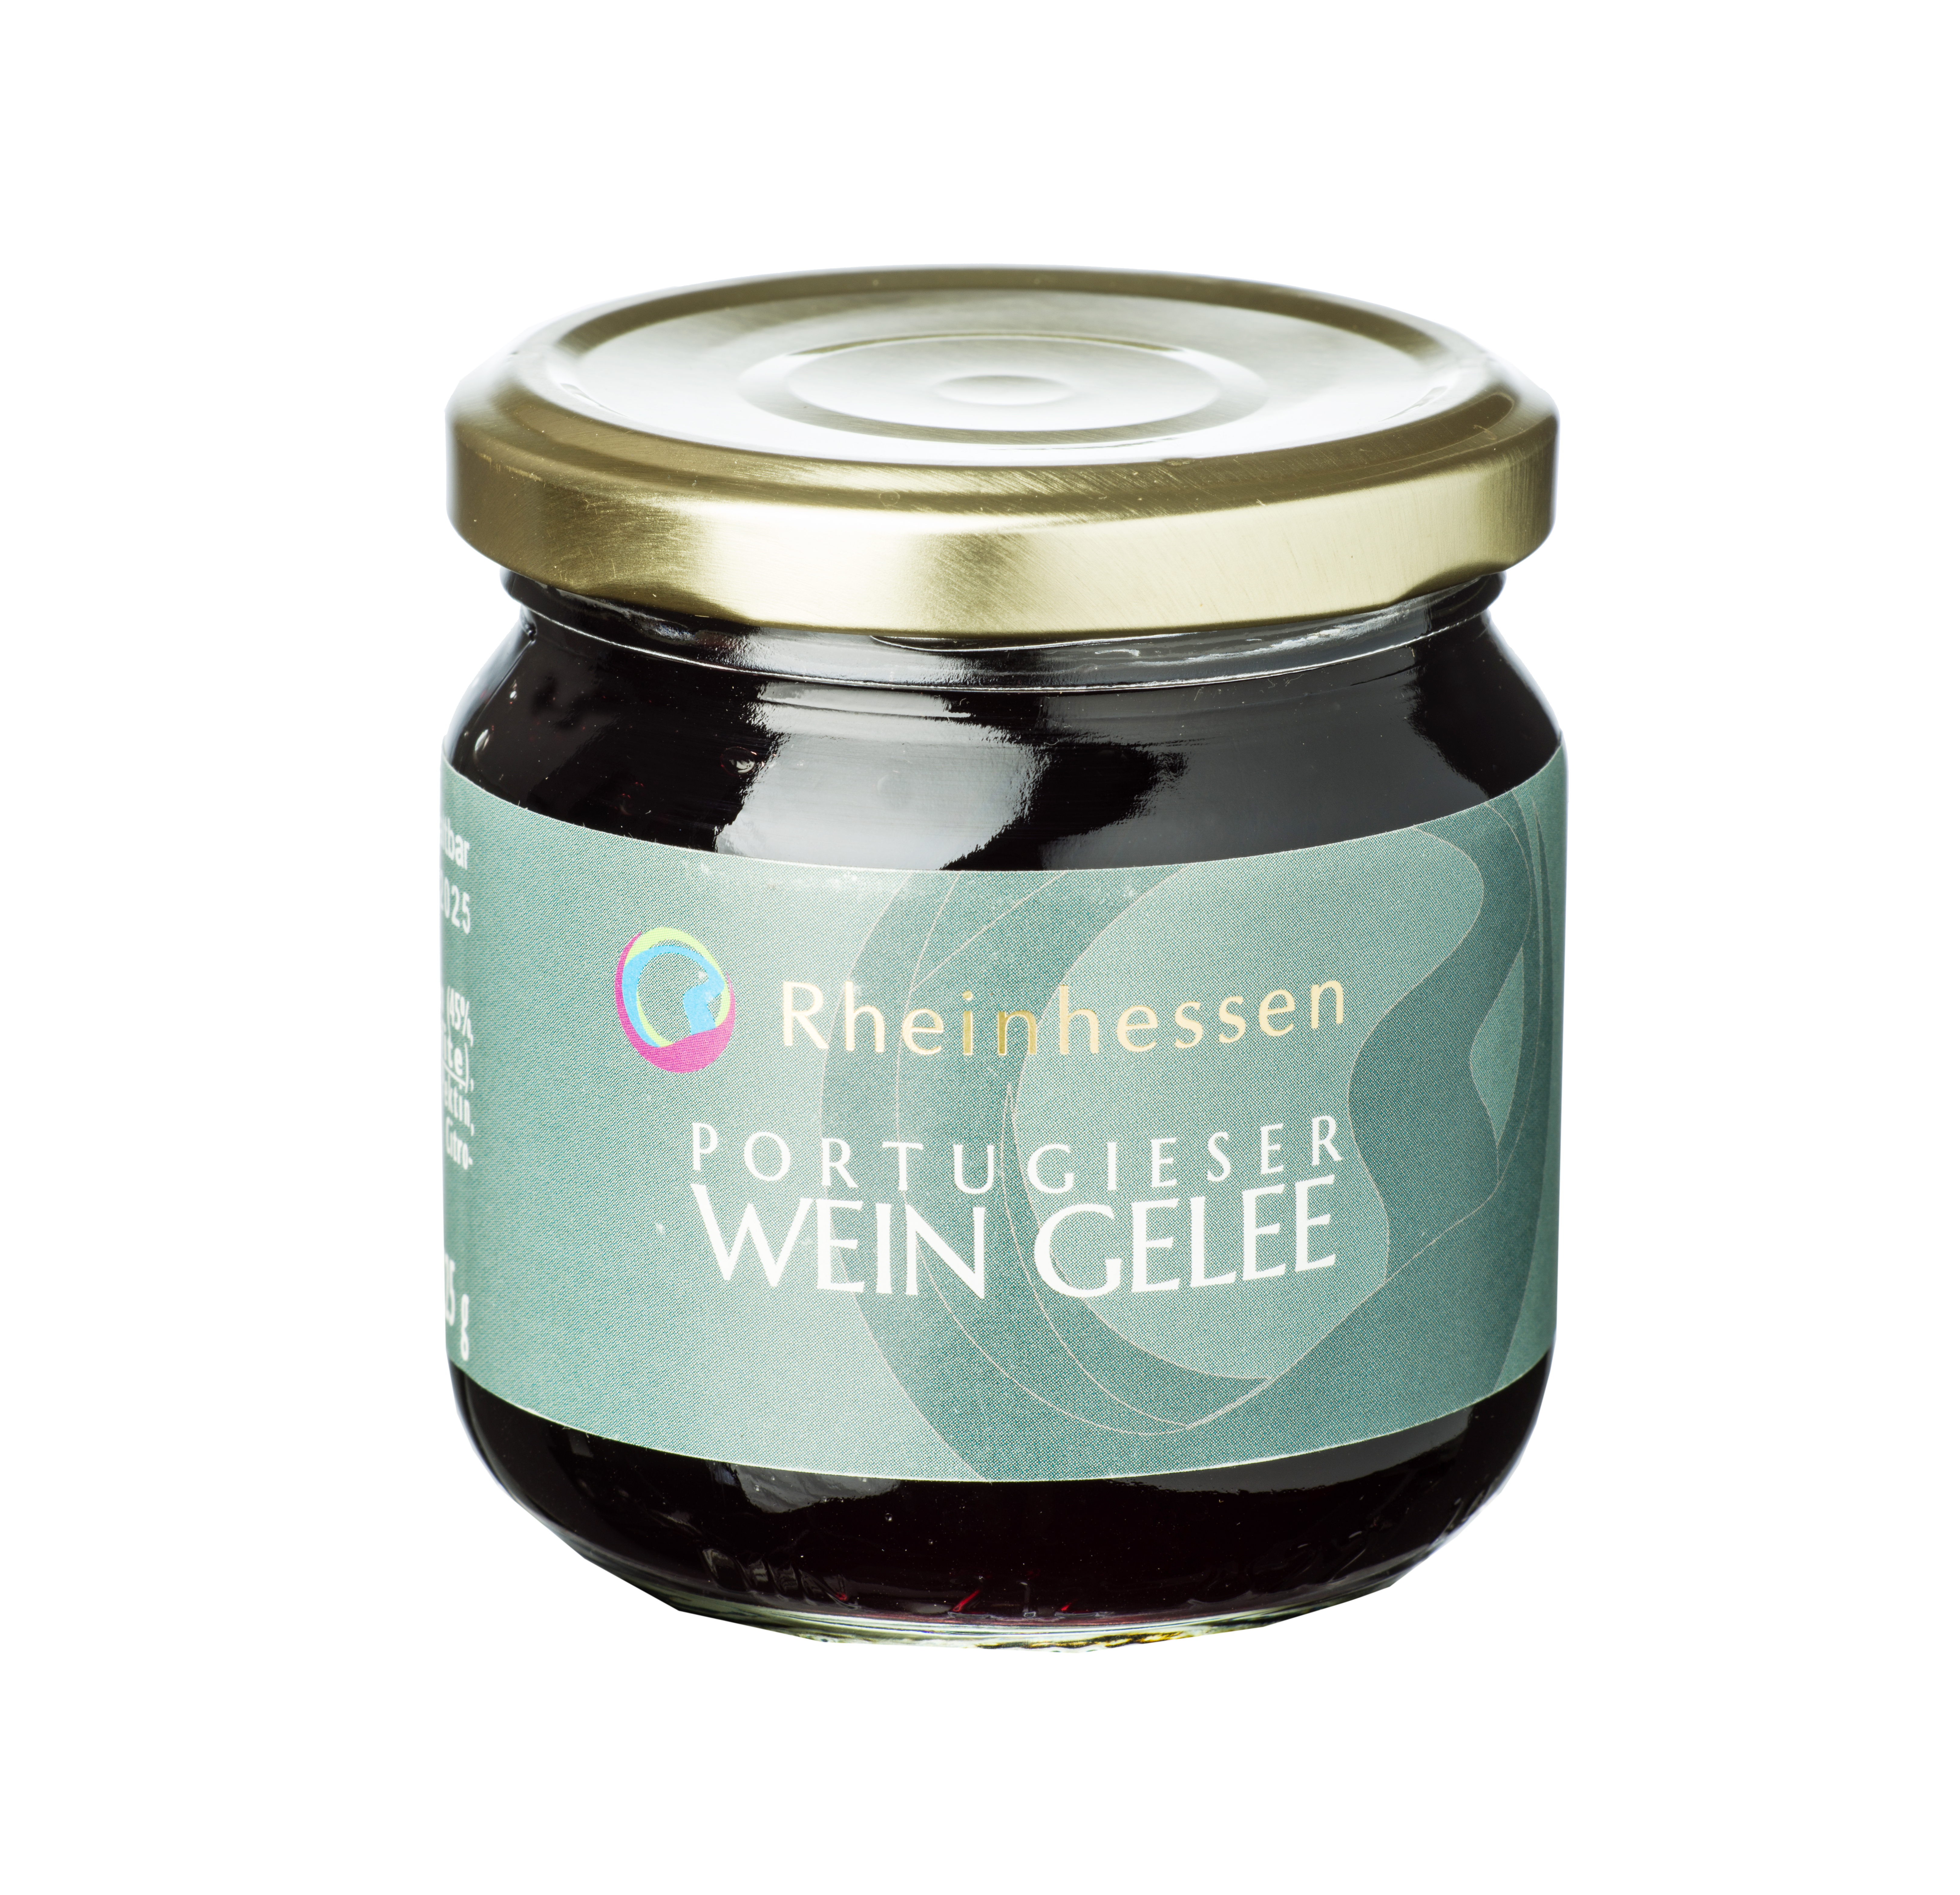 Rheinhessenwein Wein Gelee